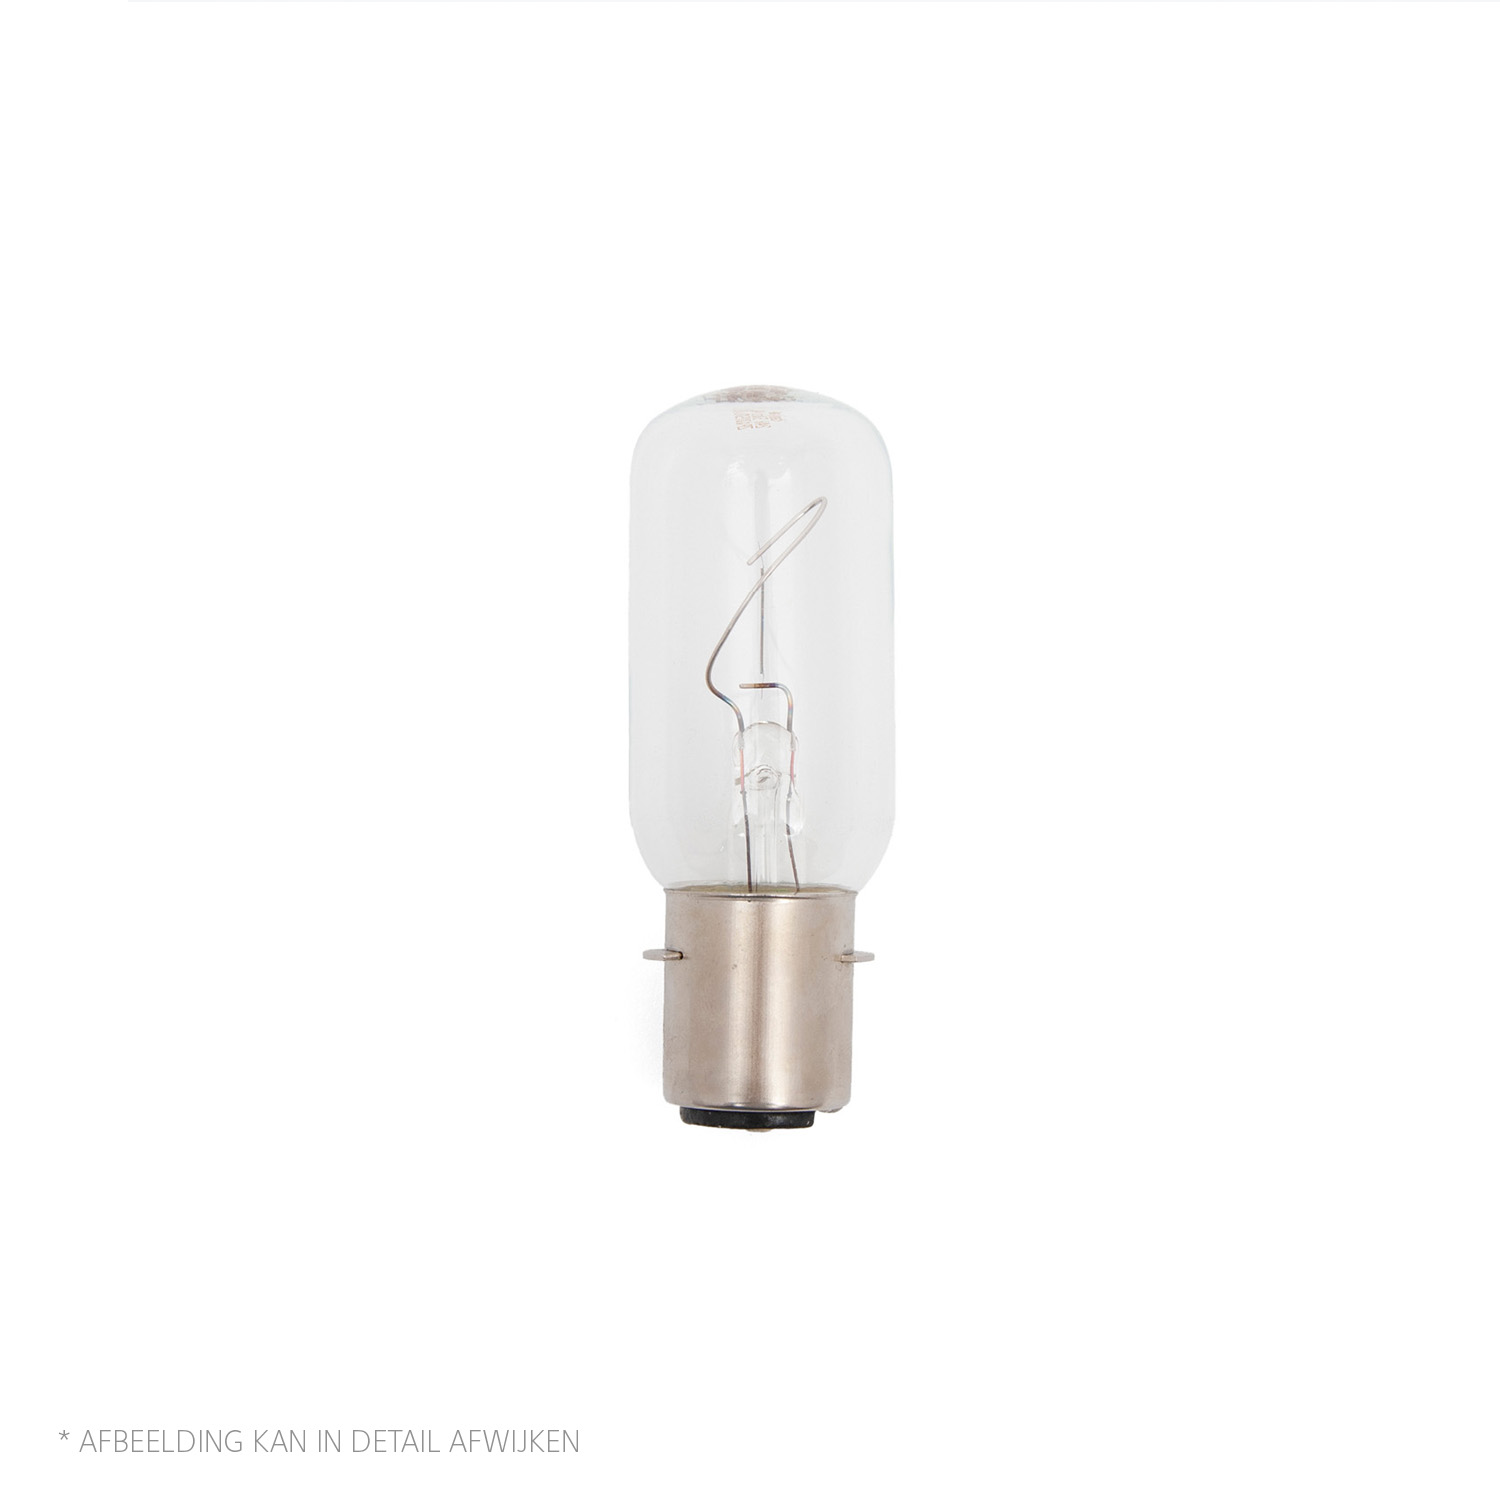 LAMP110V-60W Lamp 110V 60W P28s 500252